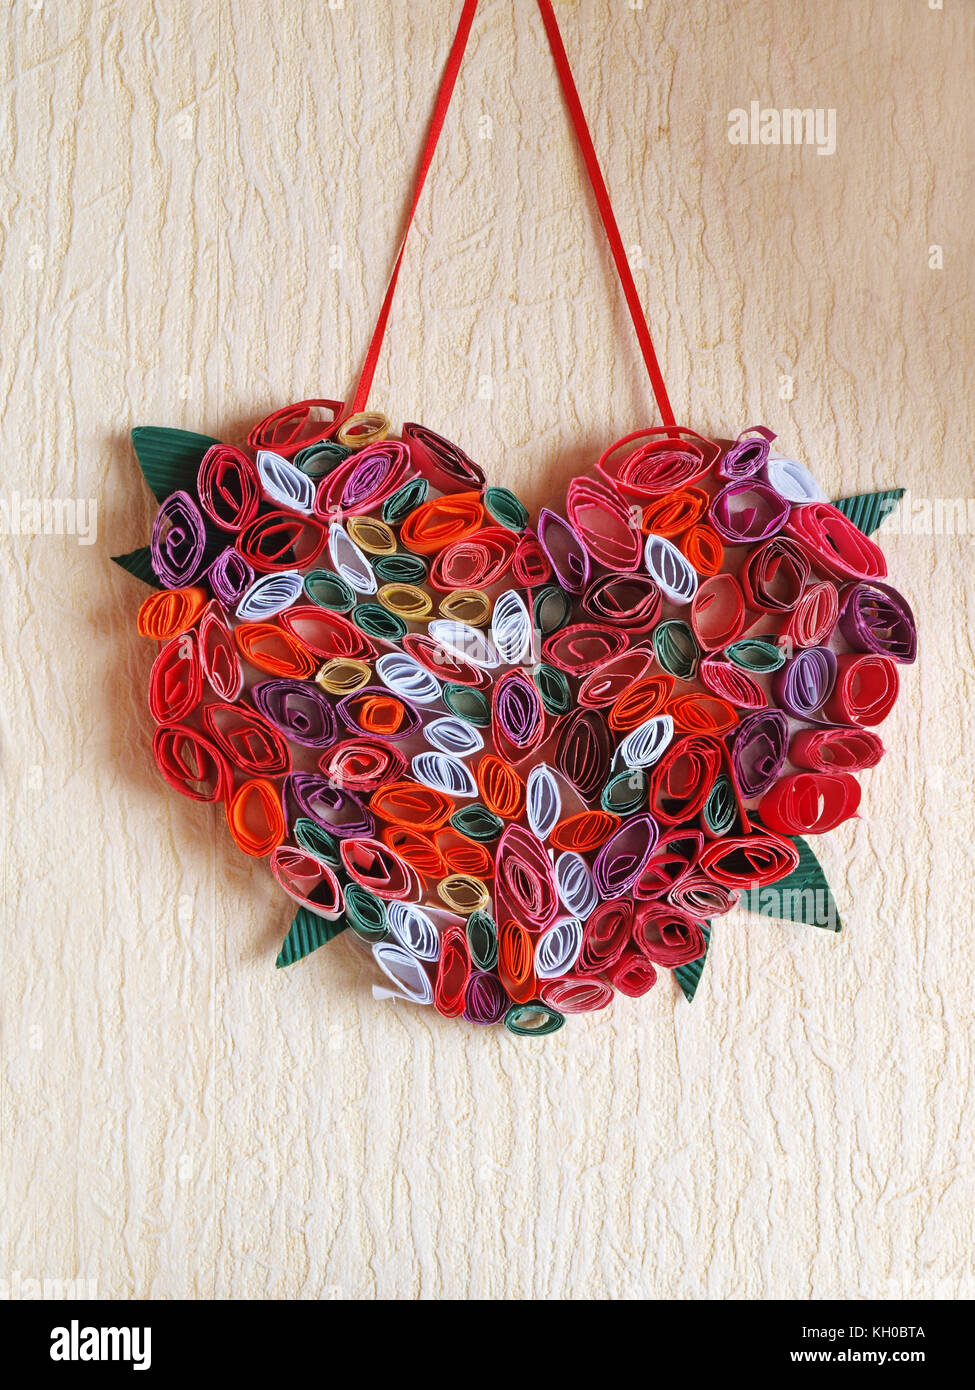 Décoration maison des petits rouleaux de papier de couleur en forme de coeur à suspendre au mur. Banque D'Images